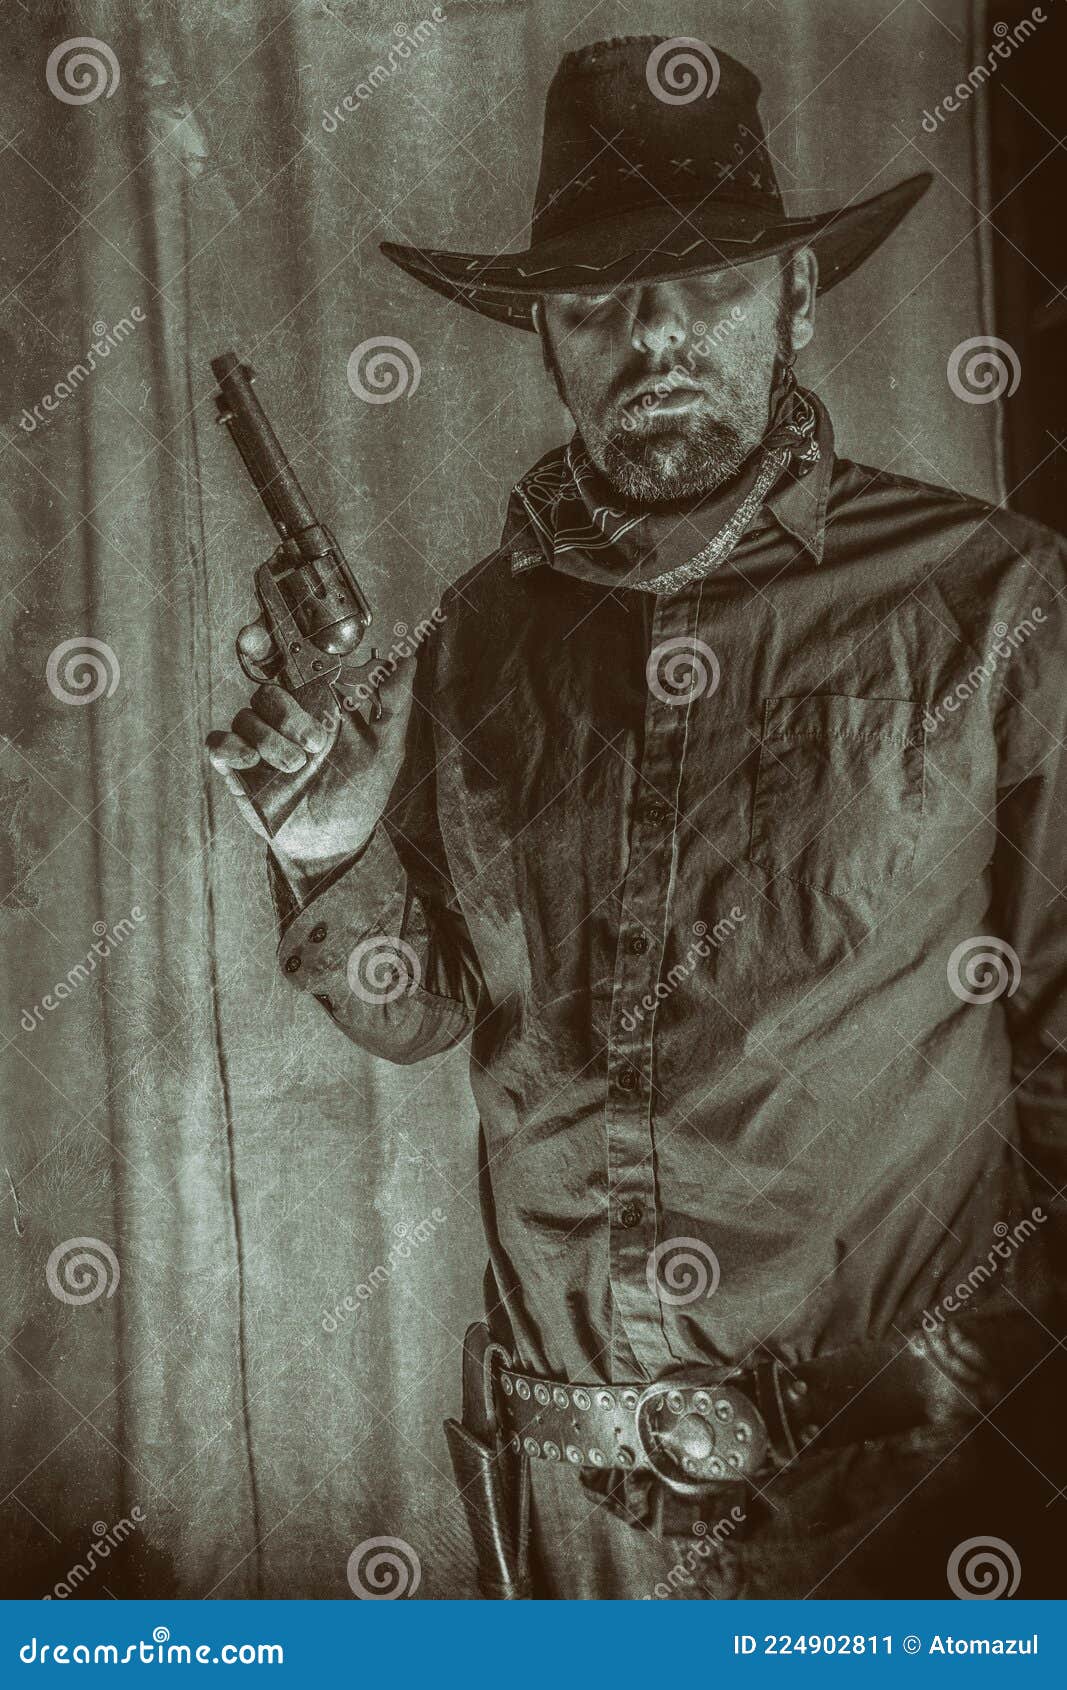 gunslinger old west cowboy holding up gun western